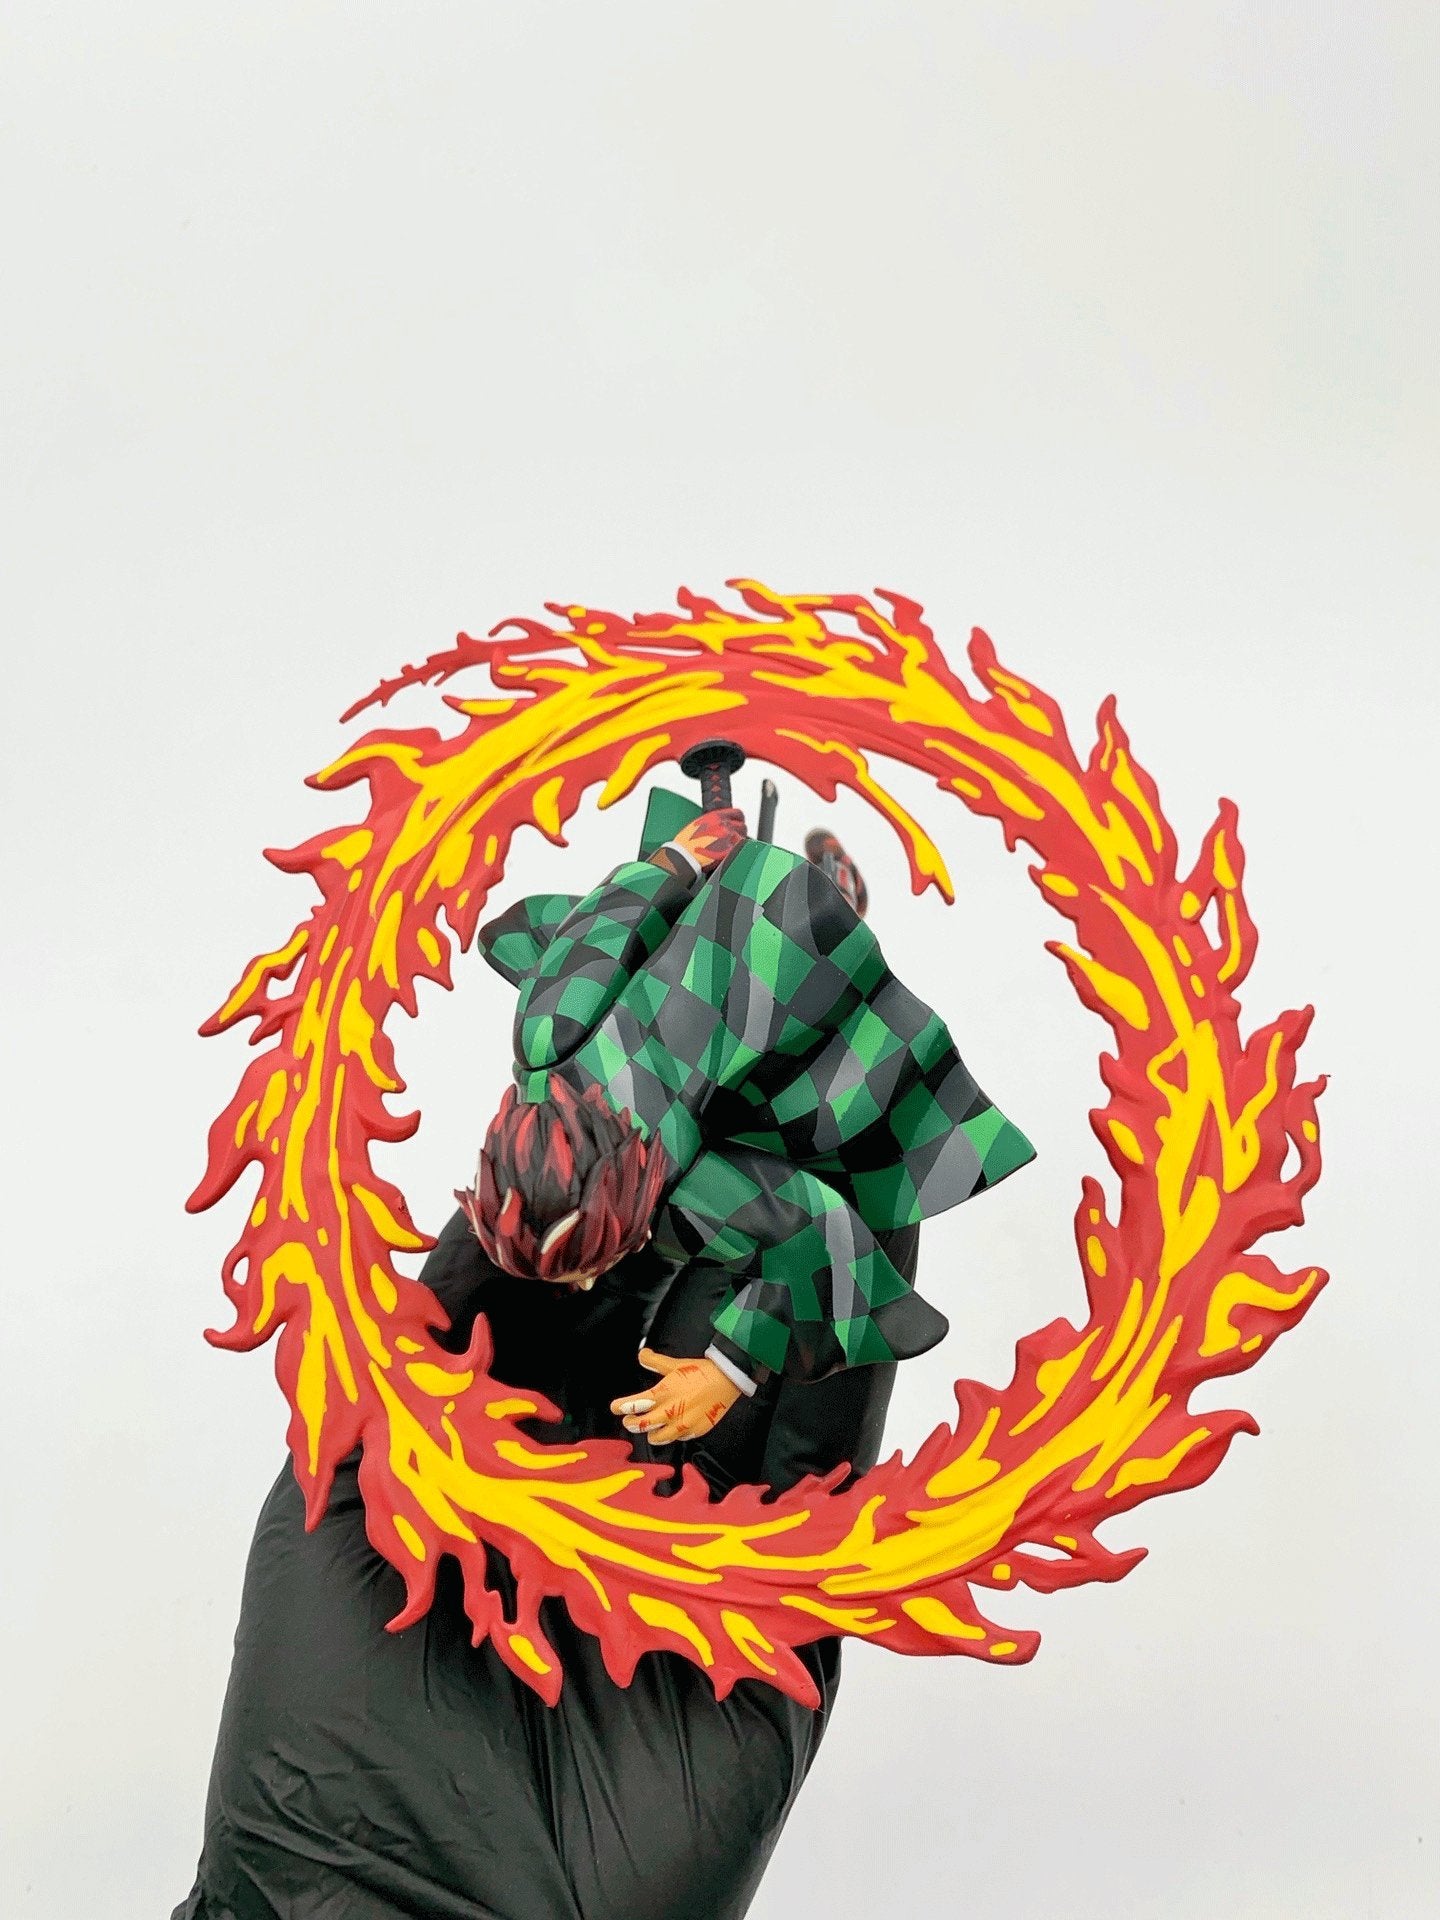 2d comic color Demon Slayer figure repaint-Tanjiro - Lyk Repaint